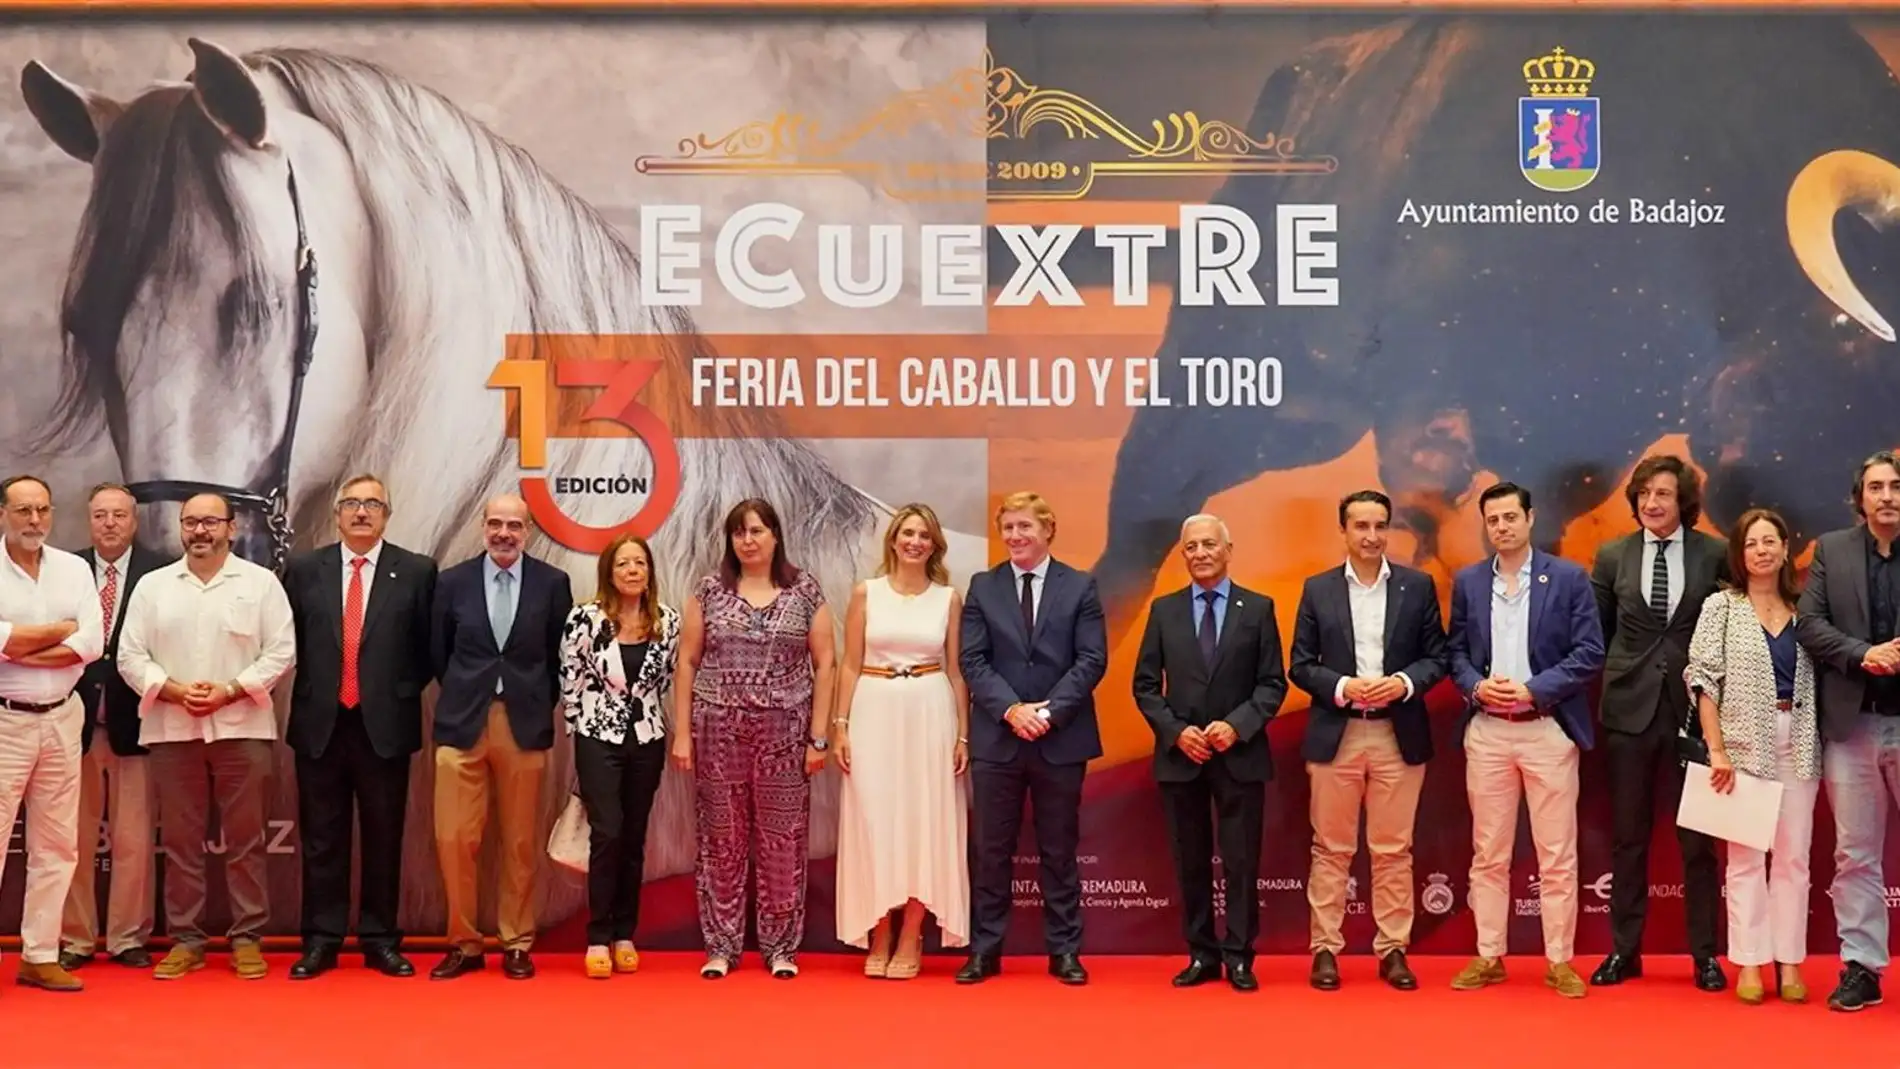 Arranca una nueva edición de Ecuextre en IFEBA Badajoz con más de 50 expositores, además de una parte lúdica y festiva